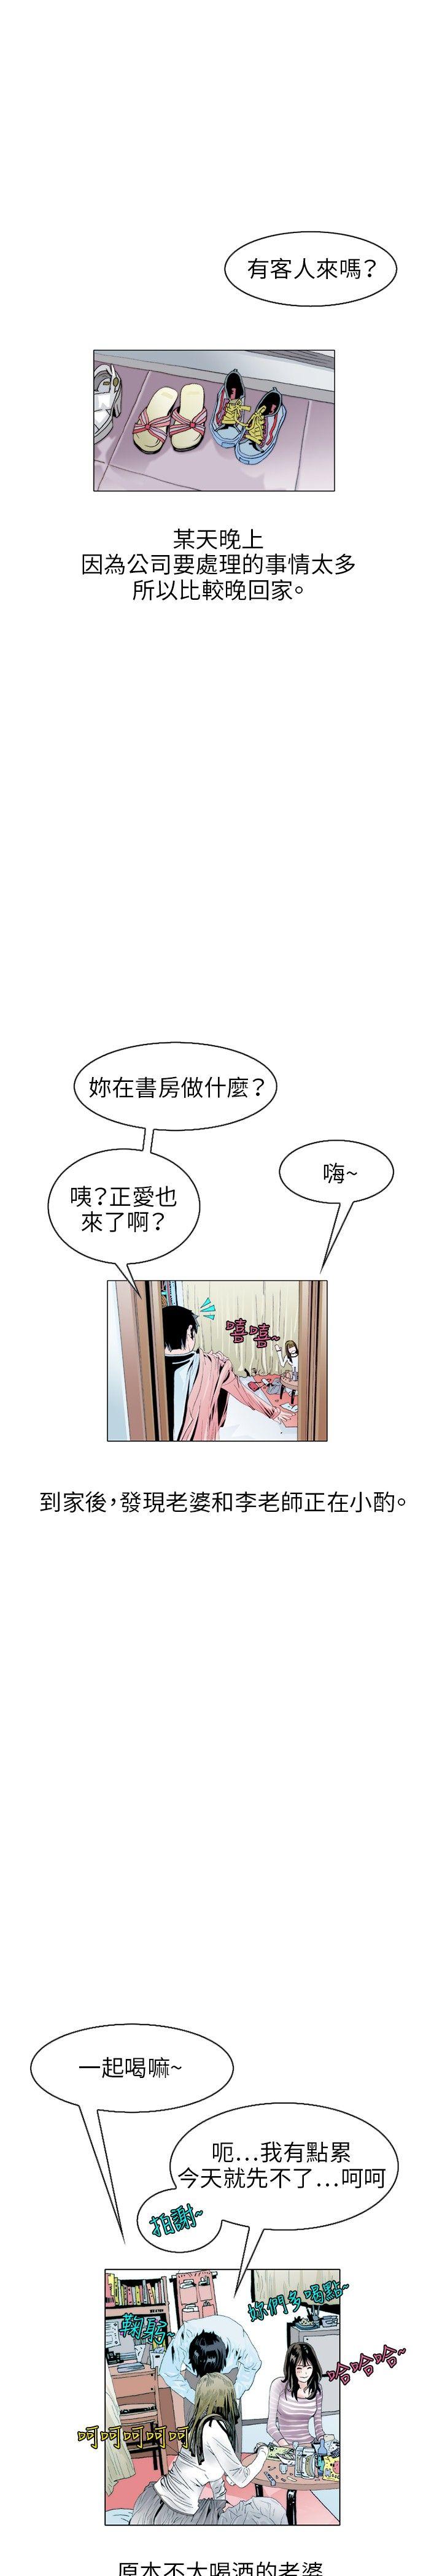 秘密Story  诱惑(1) 漫画图片16.jpg